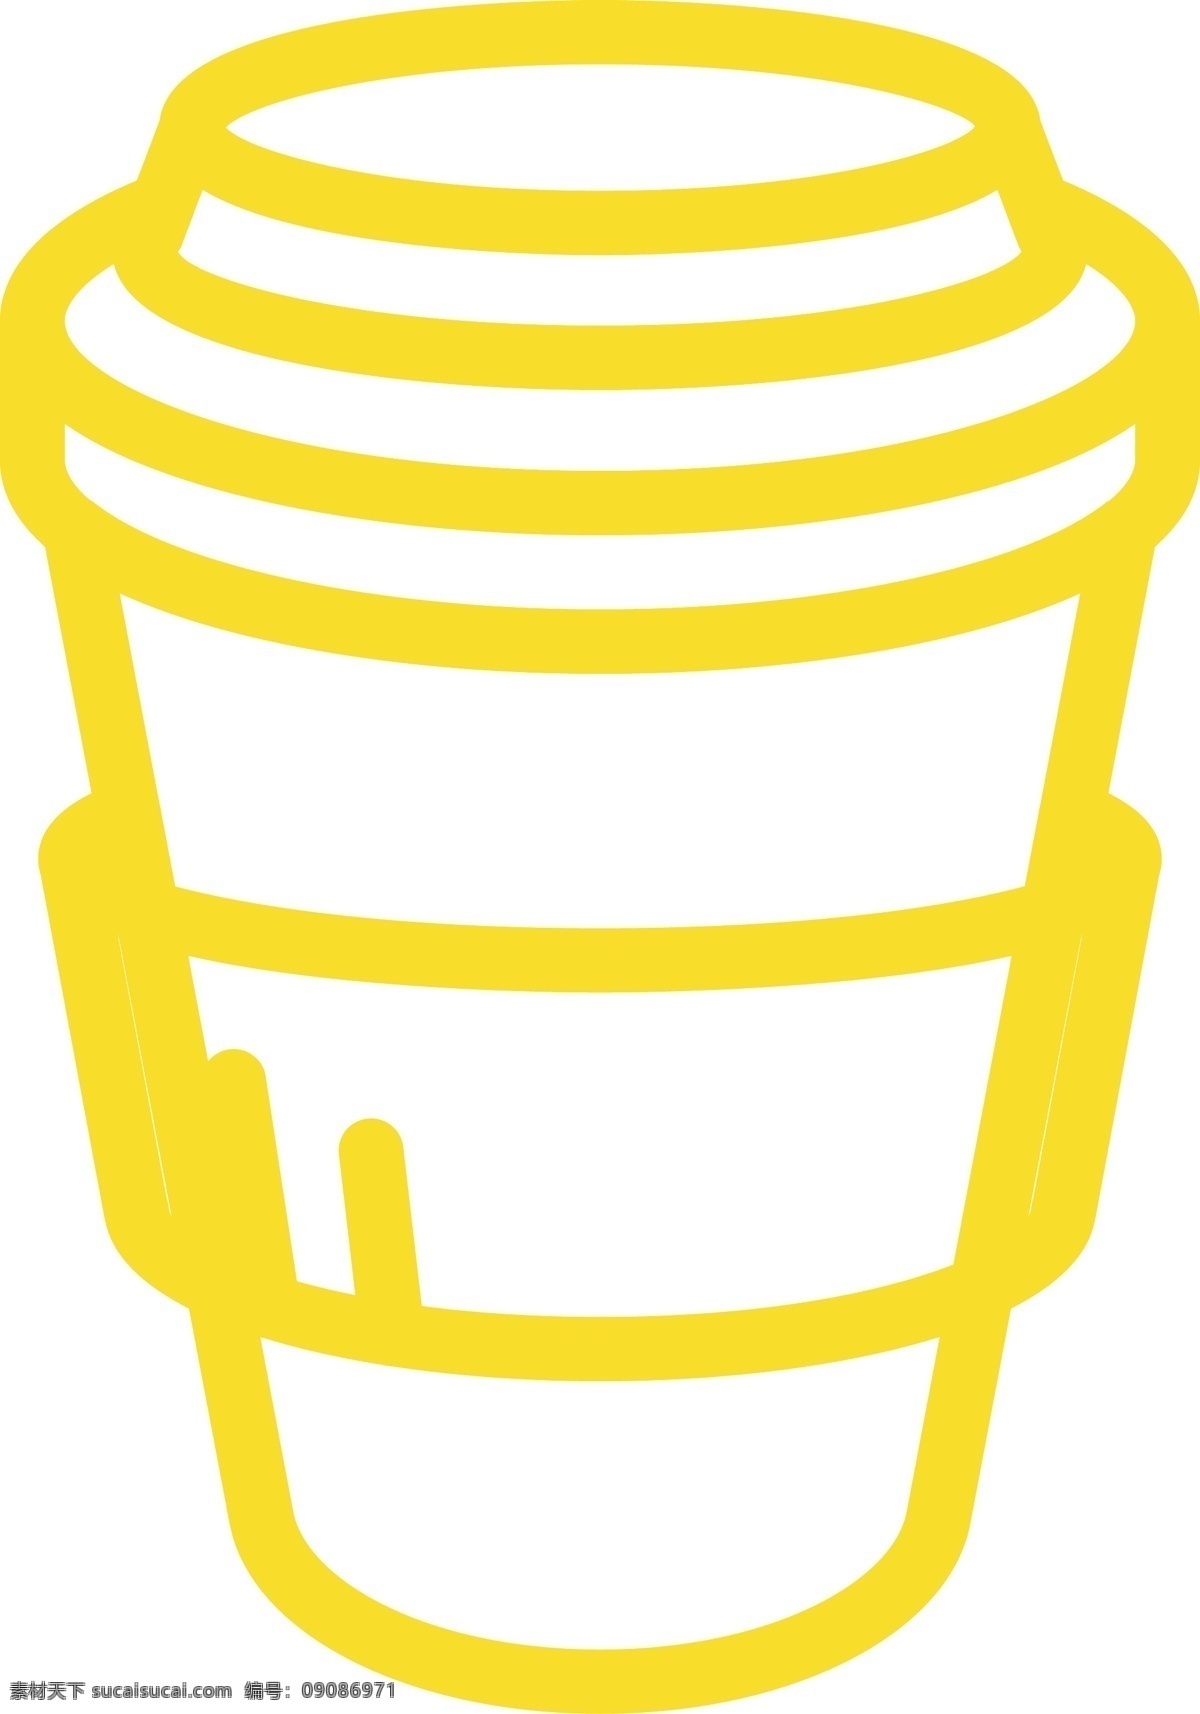 黄色 饮料 杯子 免 抠 图 黄色瓶子 ui应用图标 网页图标 电脑图标 卡通图案 卡通插画 新鲜饮料 果汁 免抠图